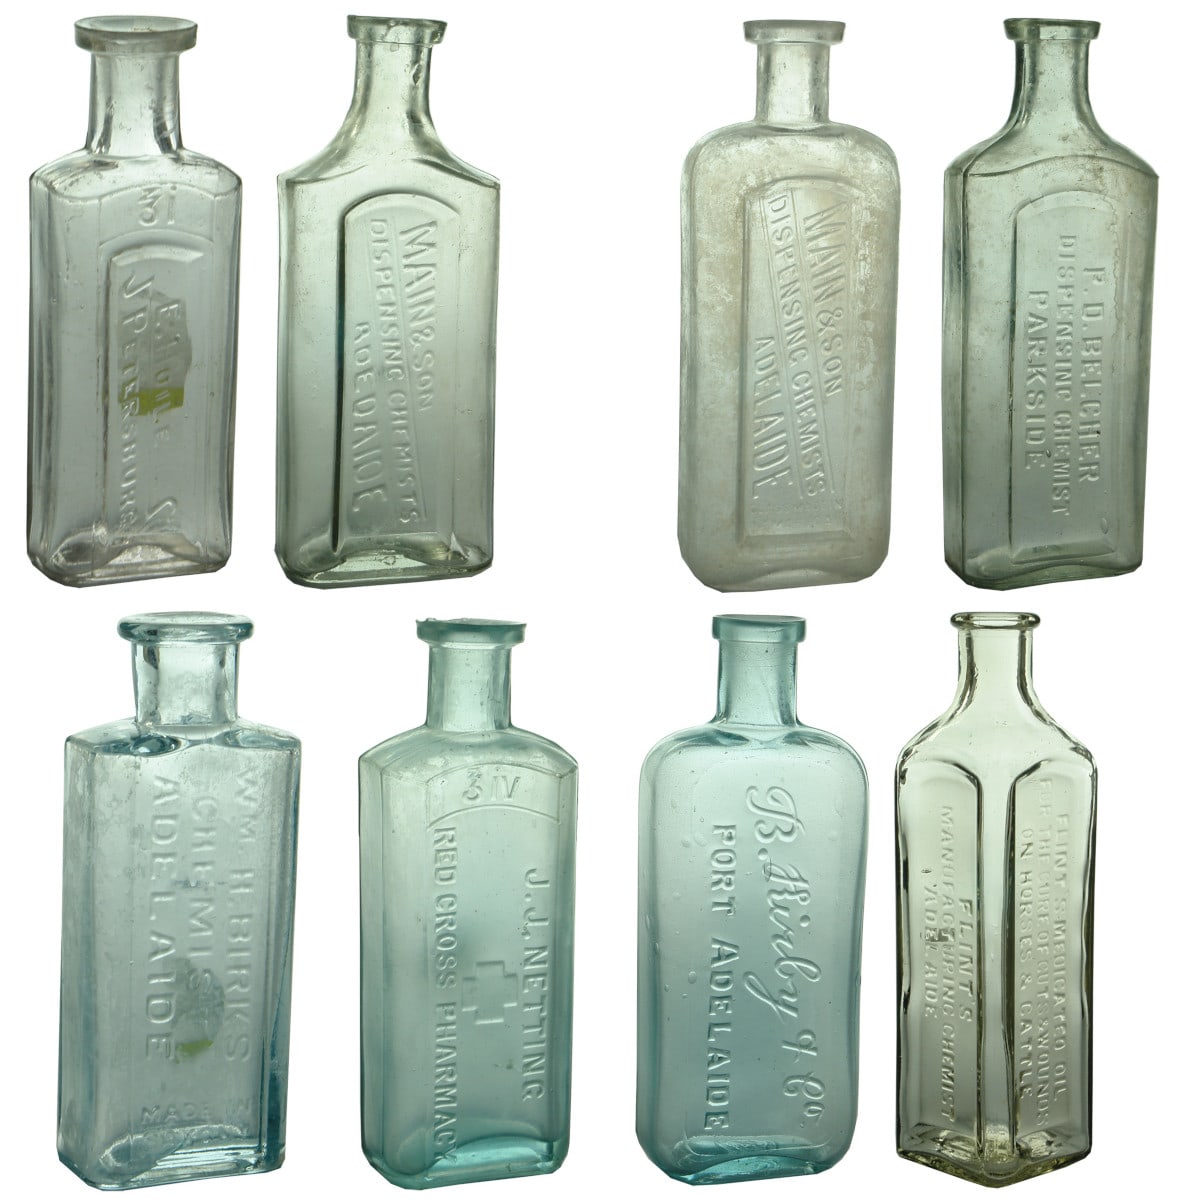 8 South Australian Chemist Bottles: E. Hoile, Petersburg; Main & Son Adelaide; P. D. Belcher, Parkside; Wm H. Birks; J. J. Netting; B. Kirby & Co; Flint's Medicated Oils. (South Australia)